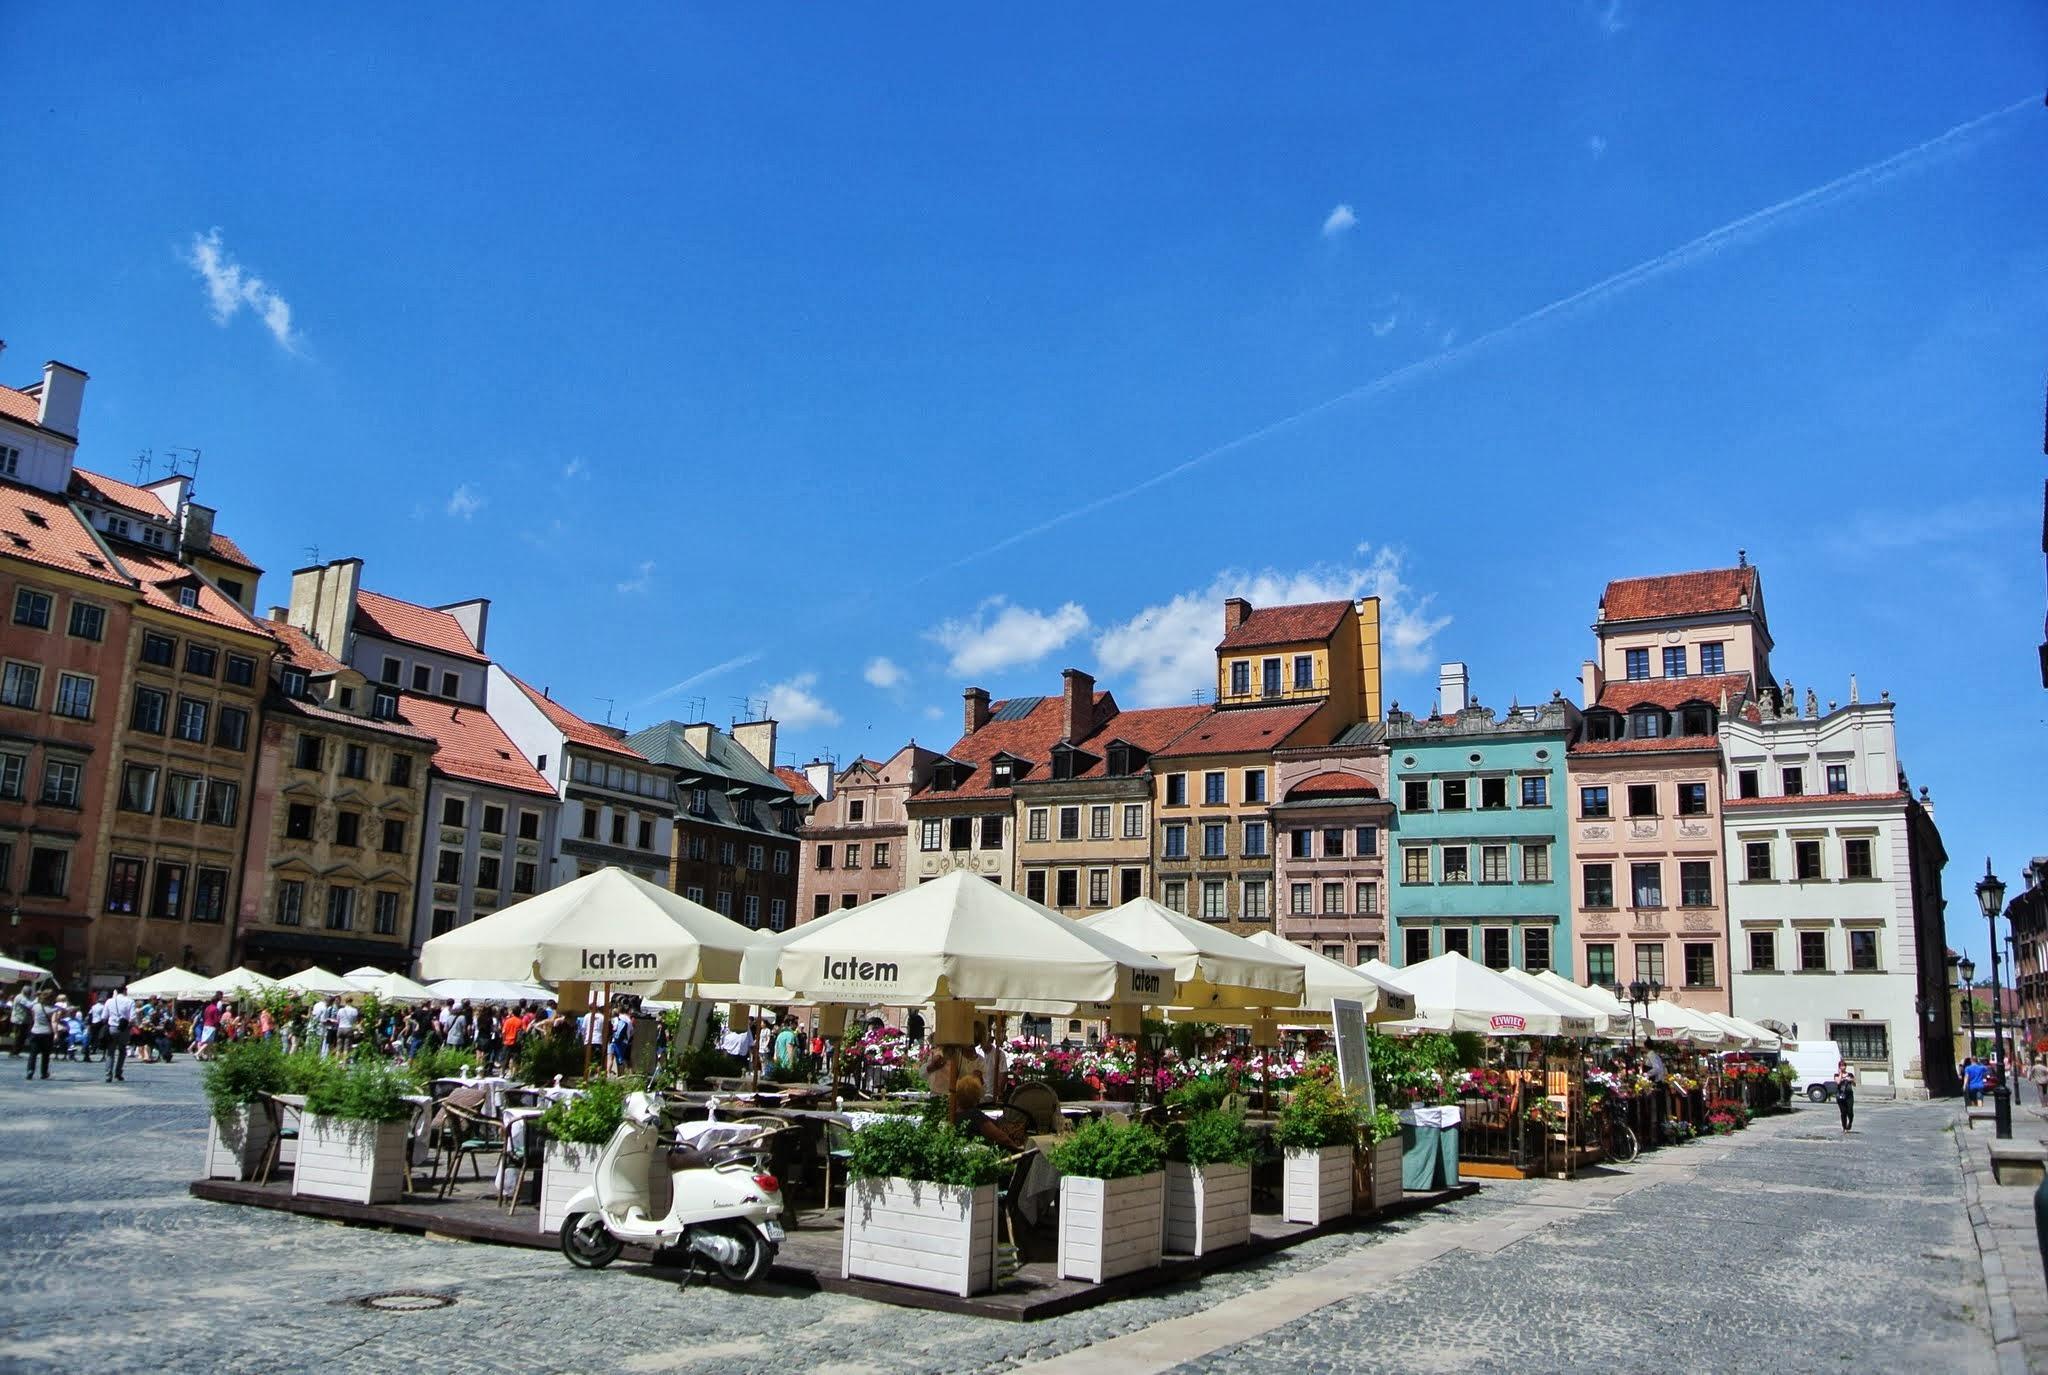 Πανοραμική φωτογραφία του κέντρου όπου βρίσκονται πολλά ξενοδοχεια στη βαρσοβία